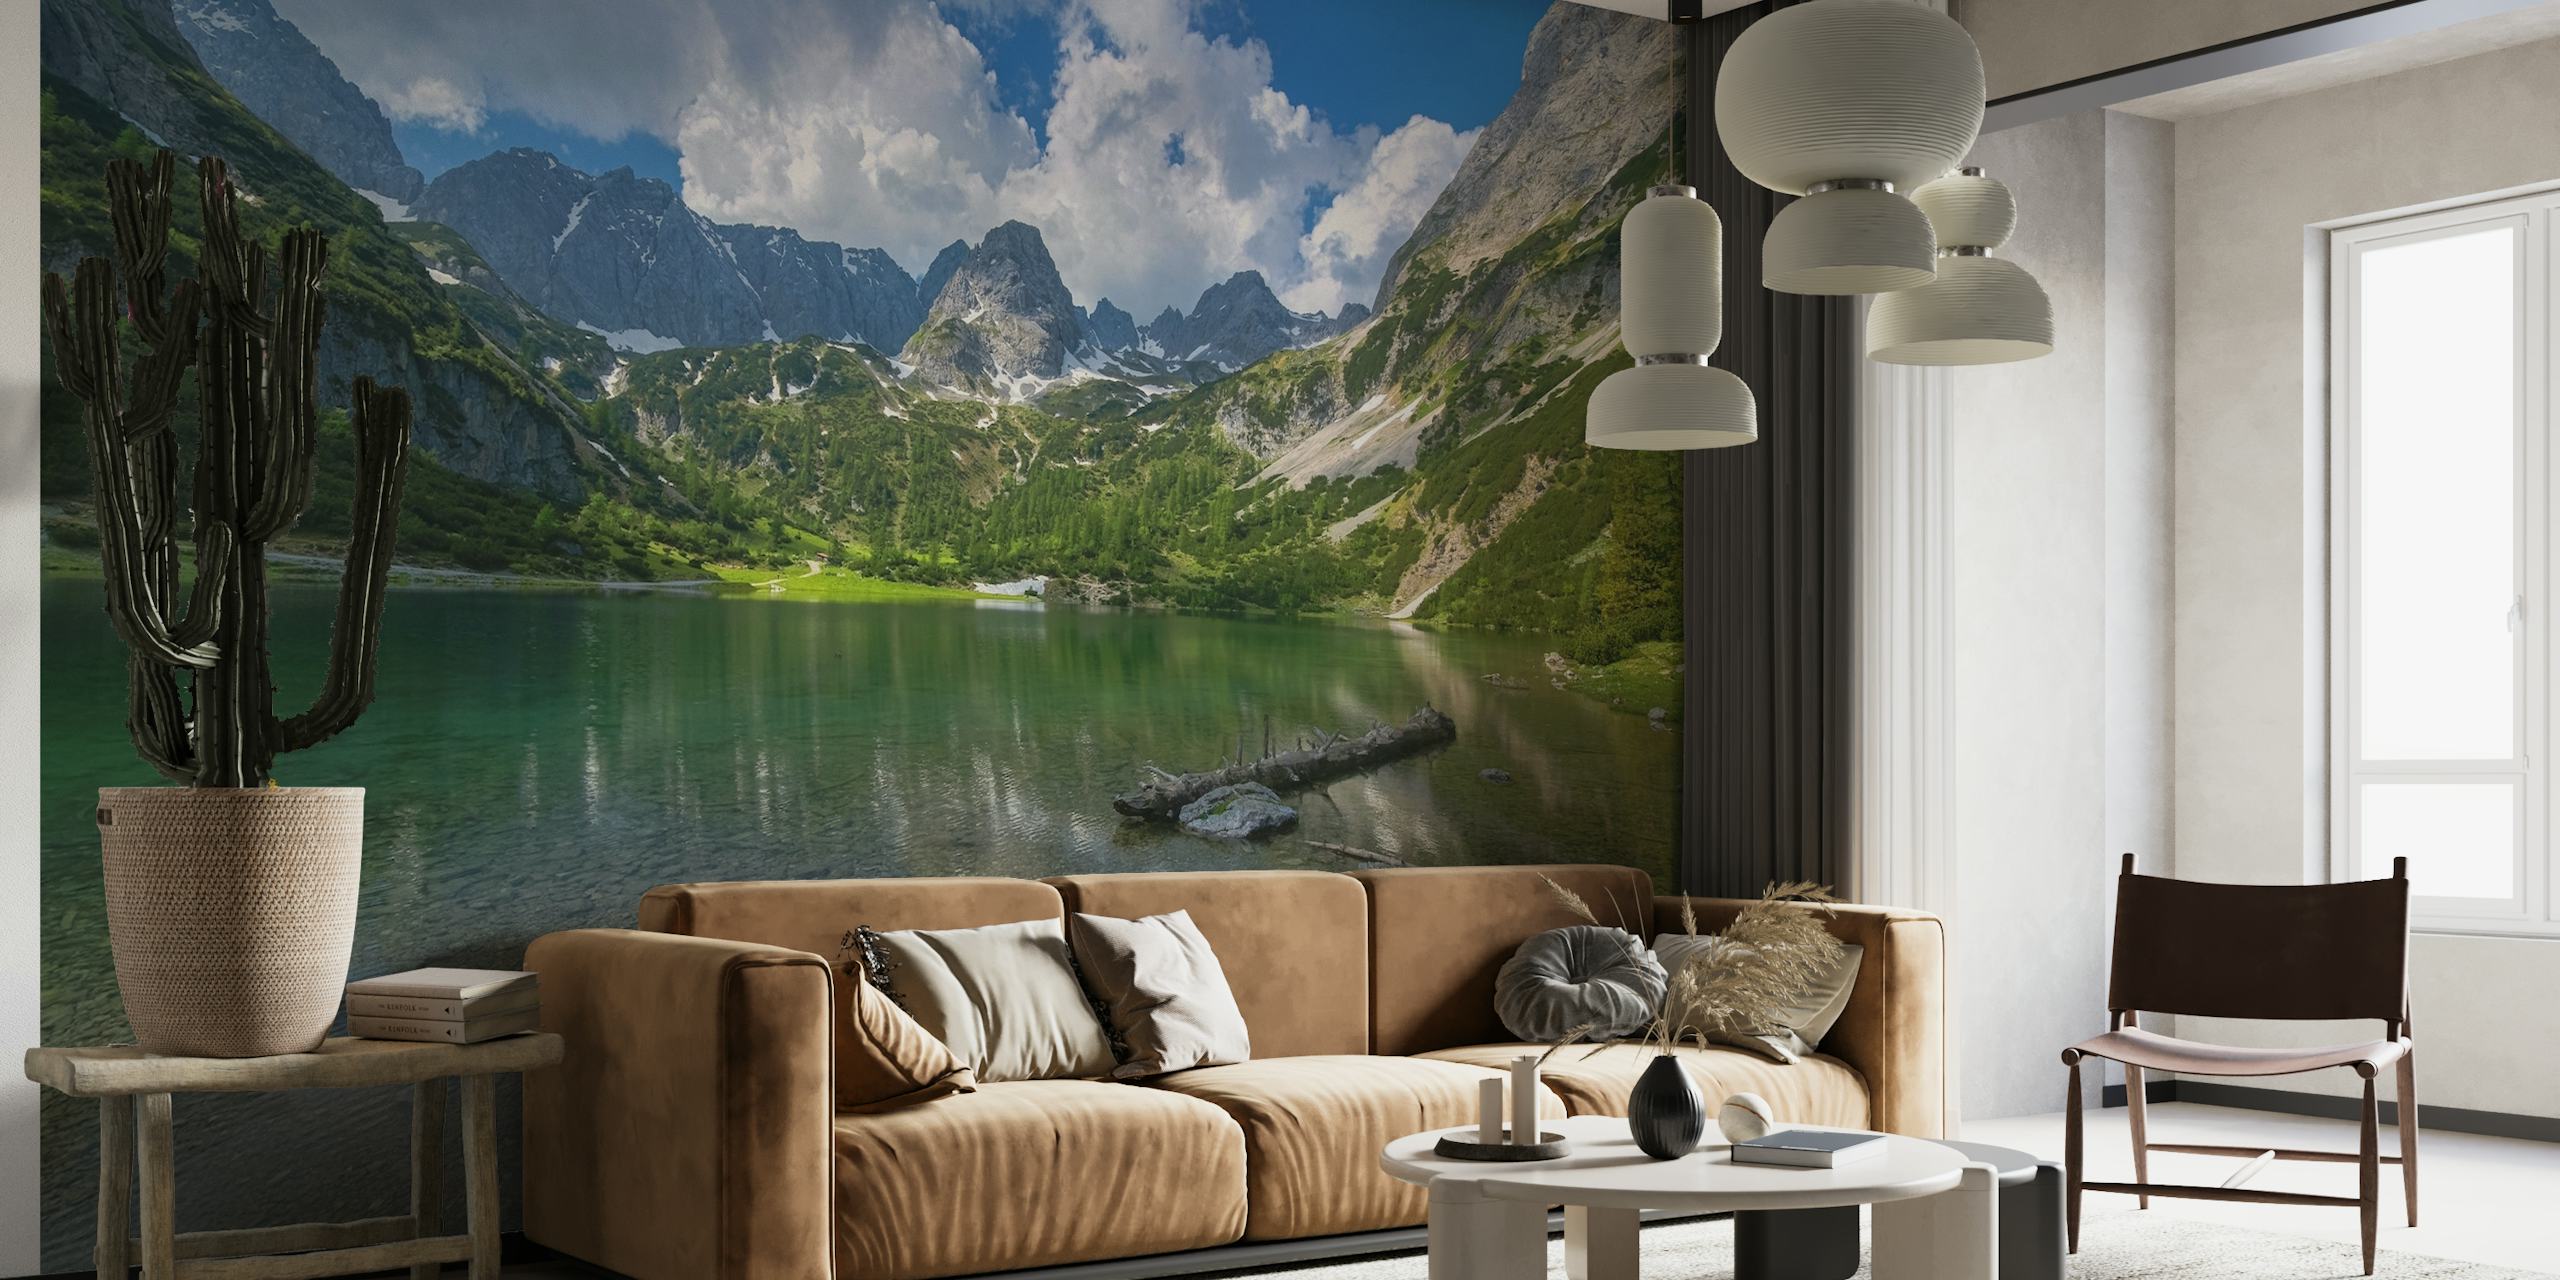 Seebensea at Tirol tapet som visar en lugn alpin sjö med bergsreflektioner